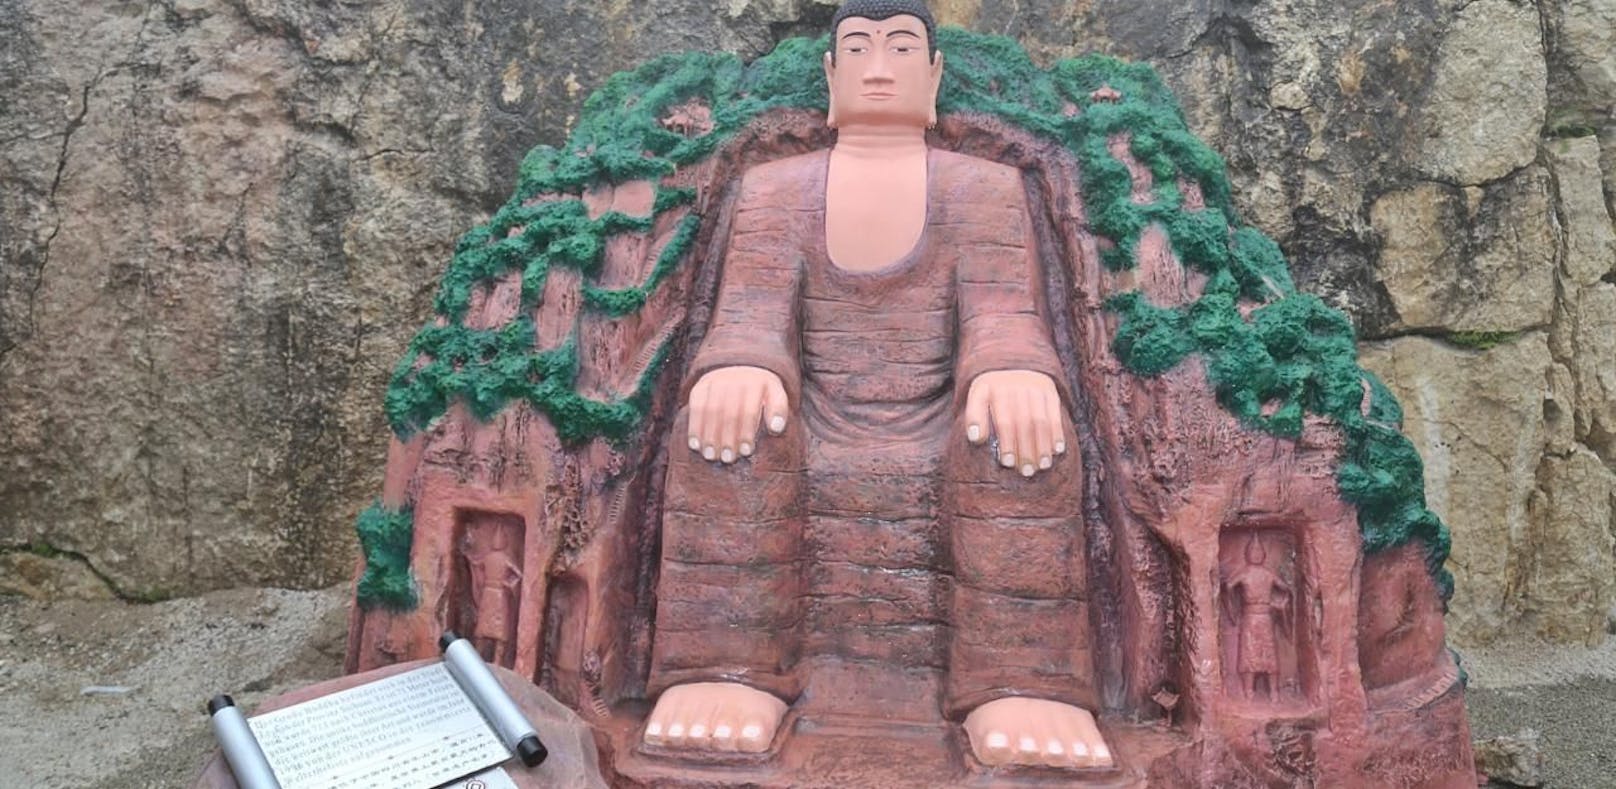 Kein Scherz! Diese Buddha-Figur steht jetzt am Krippenstein (OÖ).